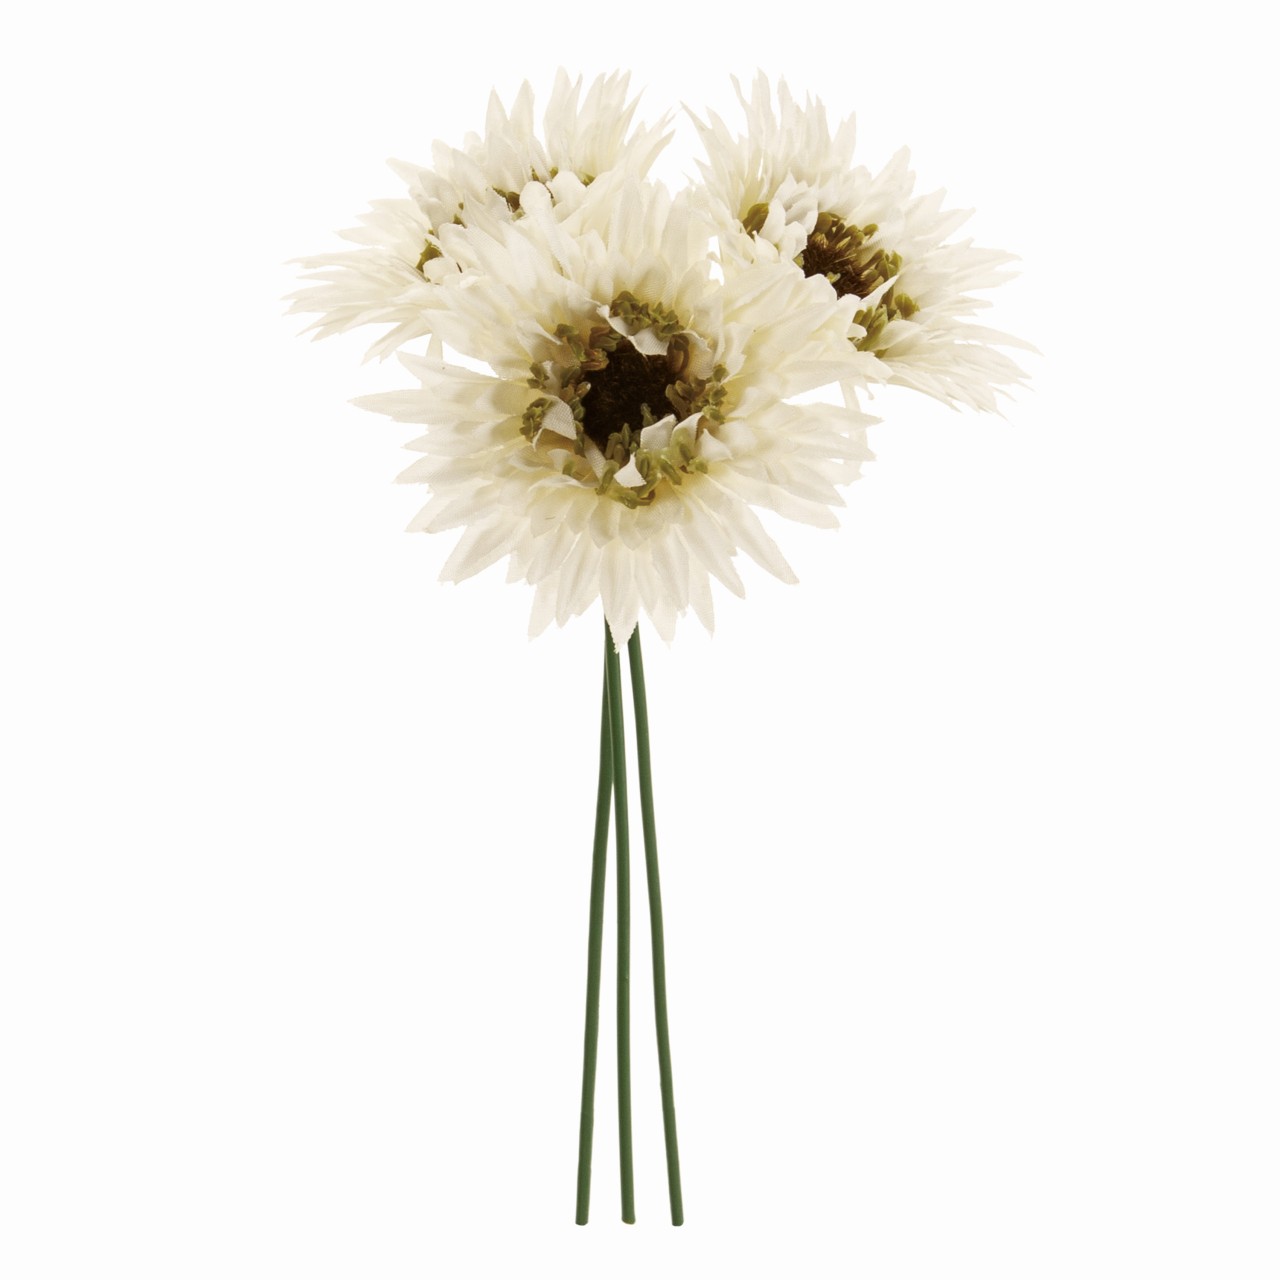 マイフラ 通販 Magiq ナナガーベラピック クリームホワイト アーティフィシャルフラワー 造花 Fm 001 ガーベラ クリームホワイト Magiq アーティフィシャルフラワー 造花 全国にmagiq 花器 花資材などをお届けします